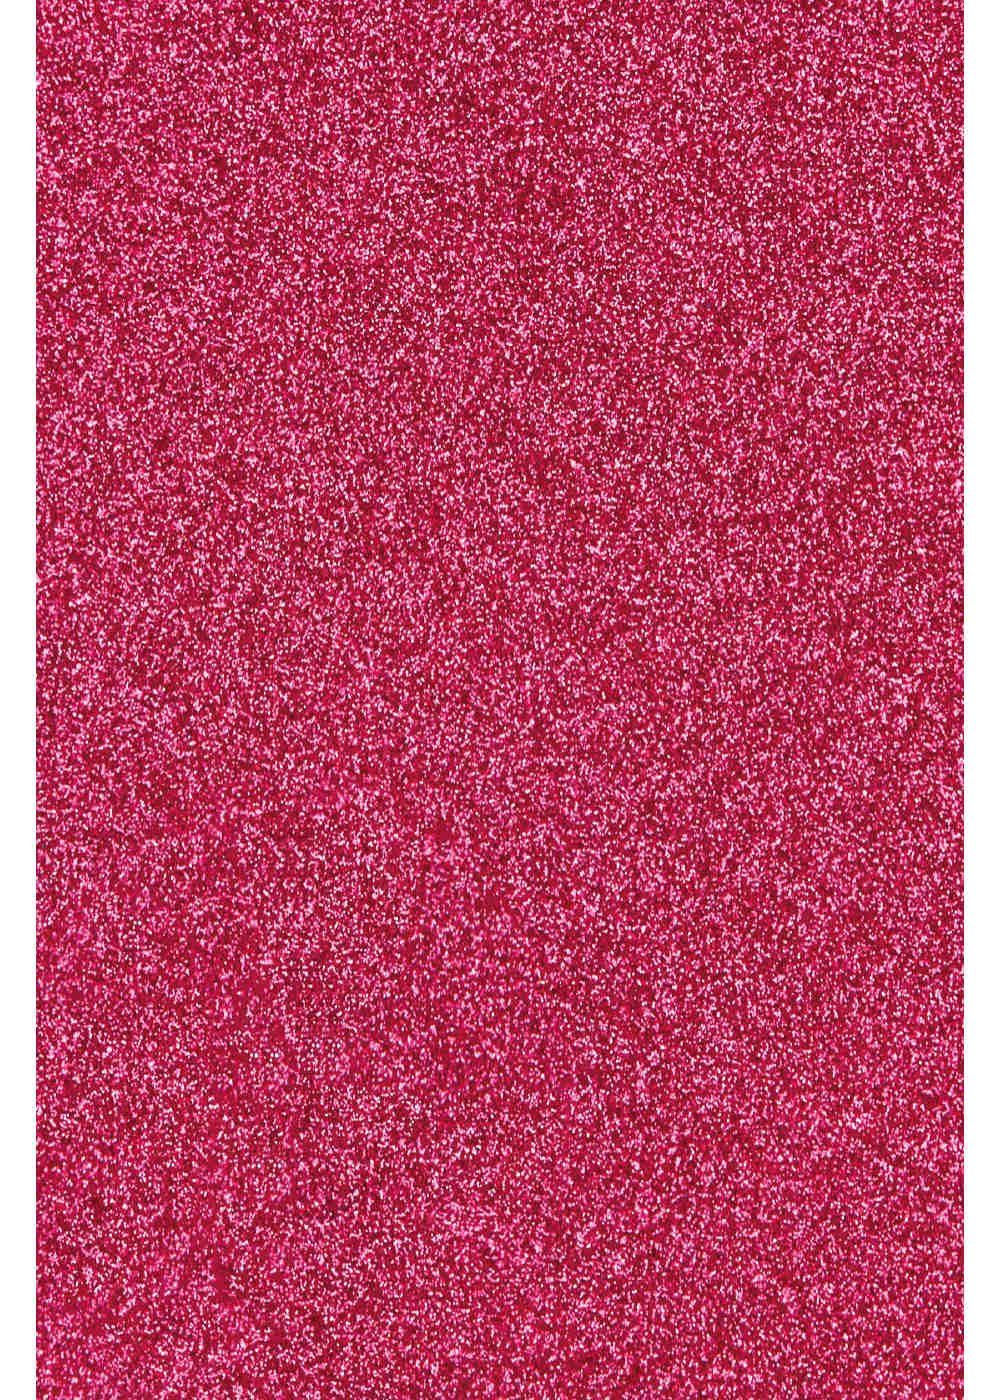 Hilltop Transparentpapier Glitzer Transferfolie/Textilfolie zum zum Hot Pink Aufbügeln, perfekt Plottern